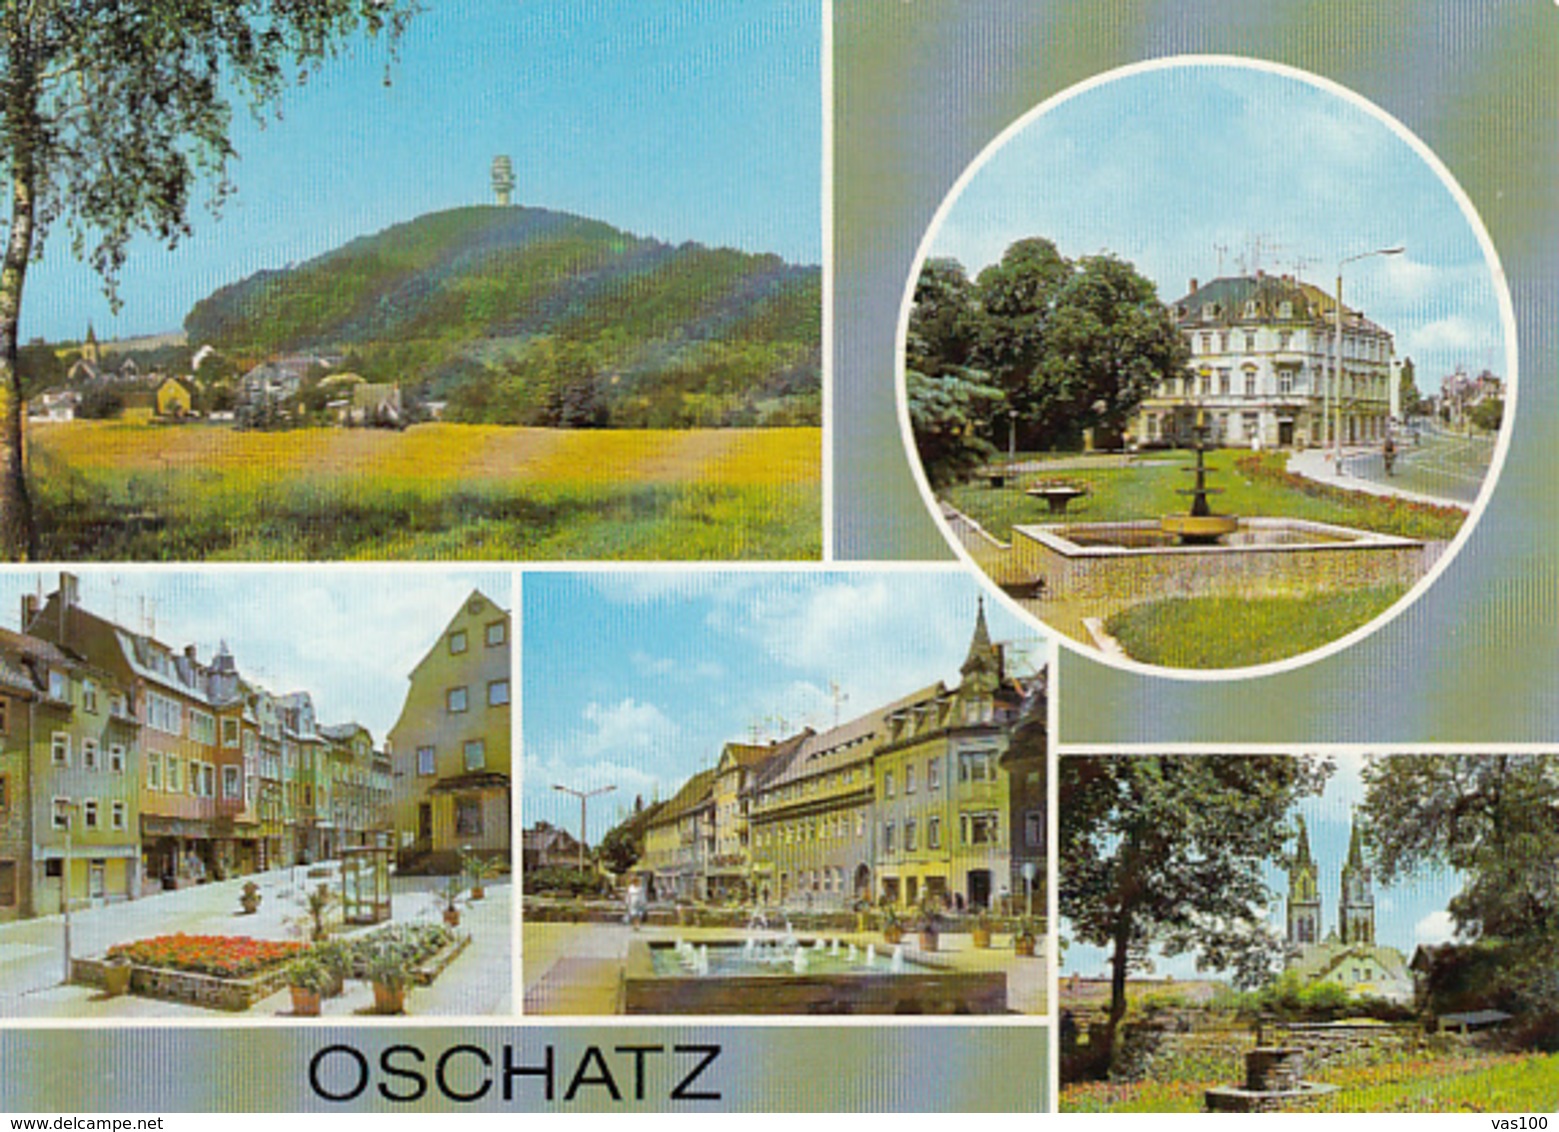 80916- OSCHATZ- PARTIAL VIEW, HILL, TOWER, SQUARE, FOUNTAIN, CHURCH - Oschatz